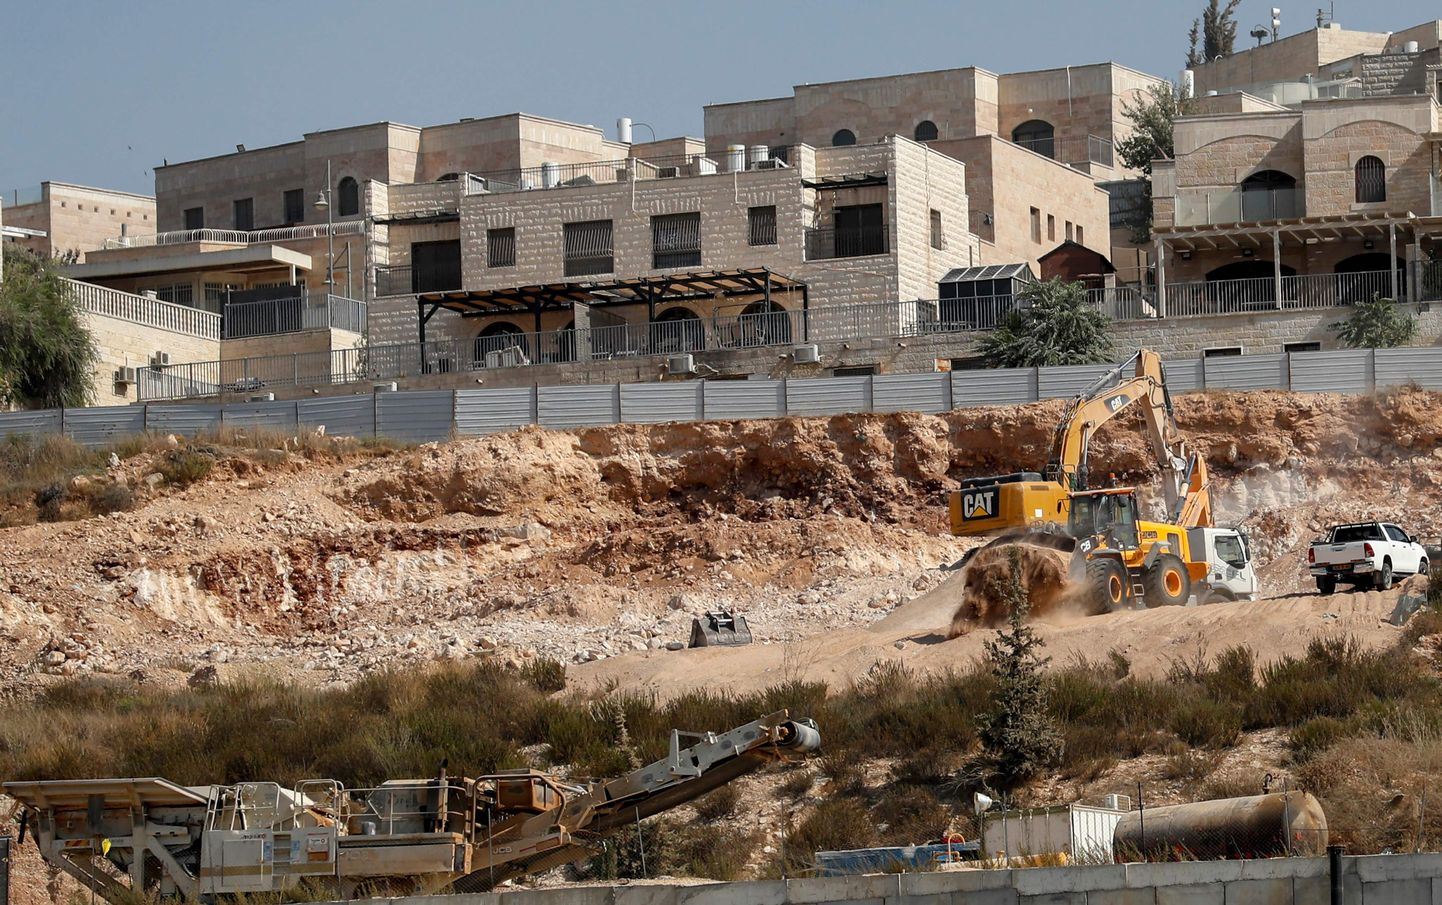 Käimasolevad ehitustööd Ramat Shlomo juudi asulas, mis asub Iisraeli poolt annekteeritud Jeruusalemma idasektoris.